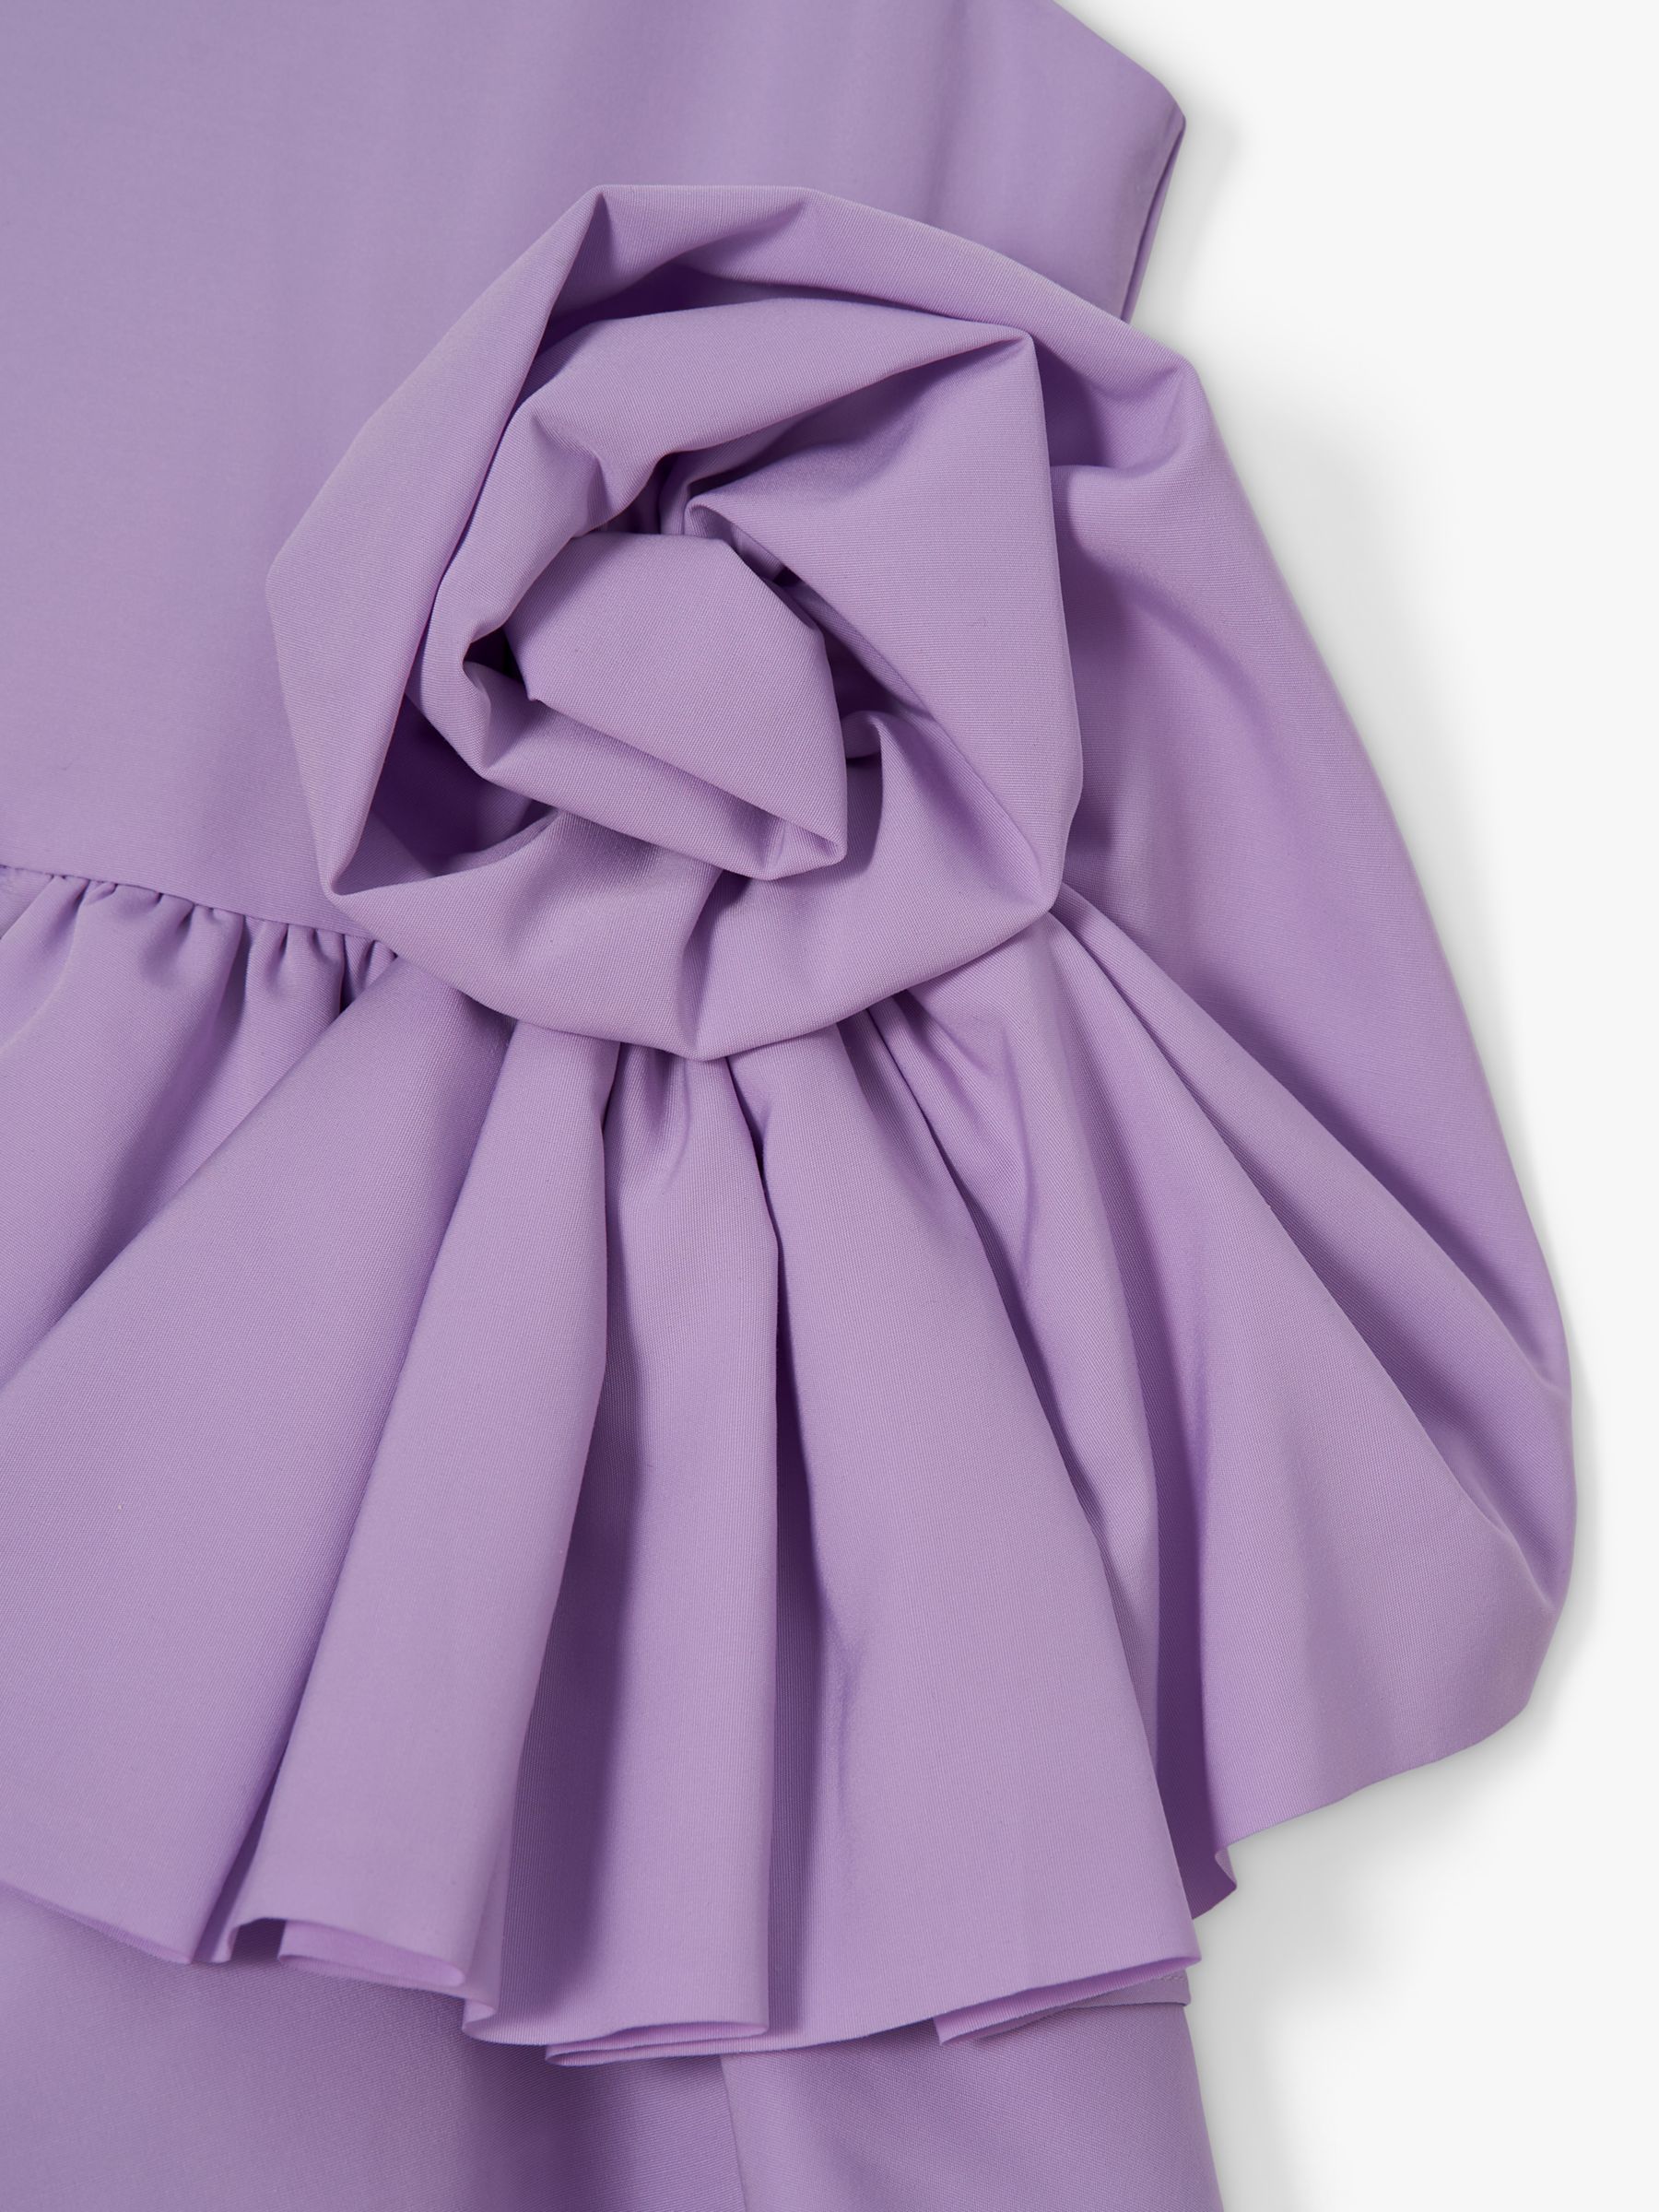 Angel & Rocket Kids' Lourdes Corsage Waist Occasion Dress, Purple, 14 years